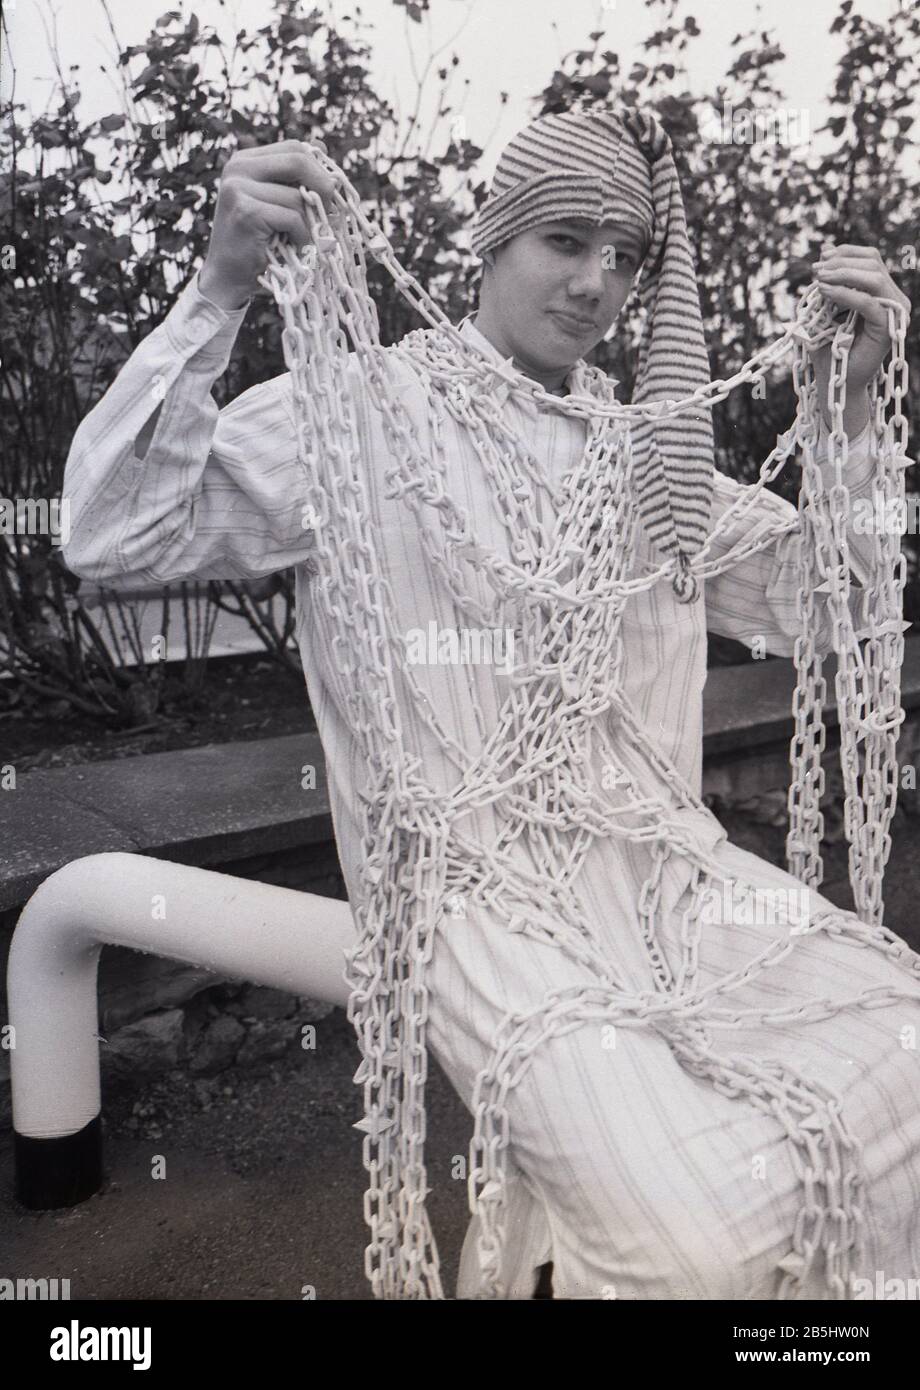 1980er Jahre, historischer junger Mann, der sich als Figur aus dem Roman „Silas Marner“ verkleidet hat, der Geist oder übernatürlich bei einem carol-Gesangsevent in England, Großbritannien, mit einem knöchellangen Nachthemd aus Baumwolle, einem winzigen Hut und einer Stoffkette. Stockfoto